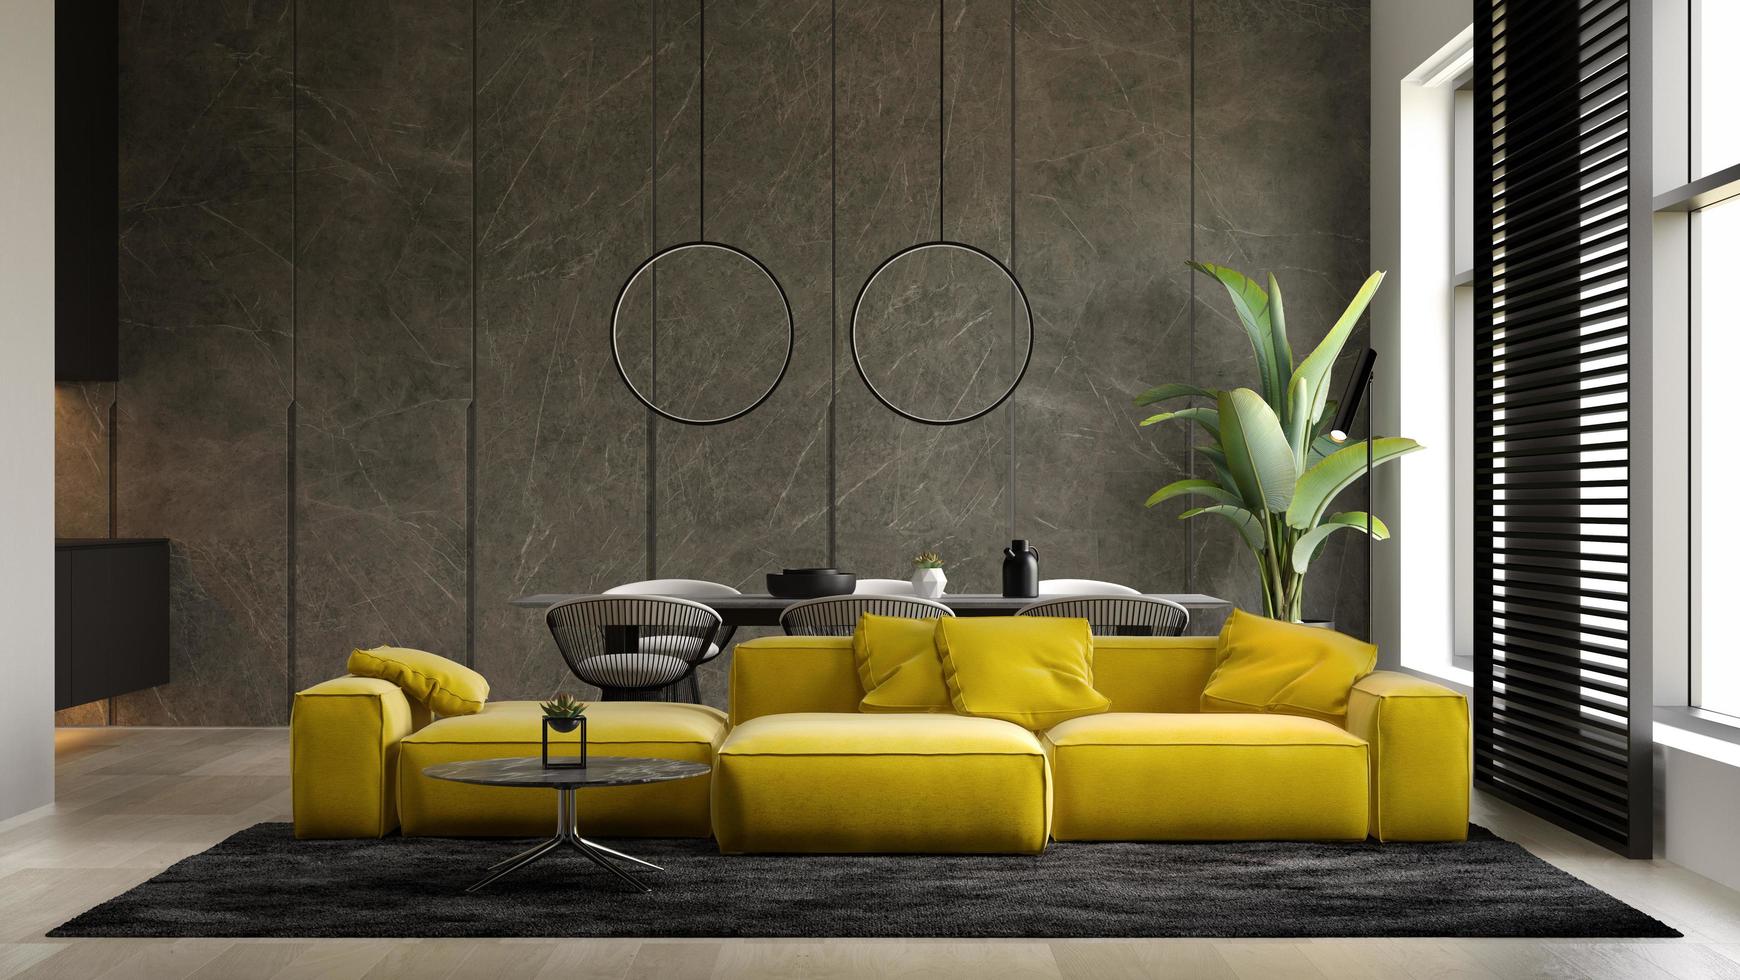 intérieur minimaliste d'un salon moderne en illustration 3d photo